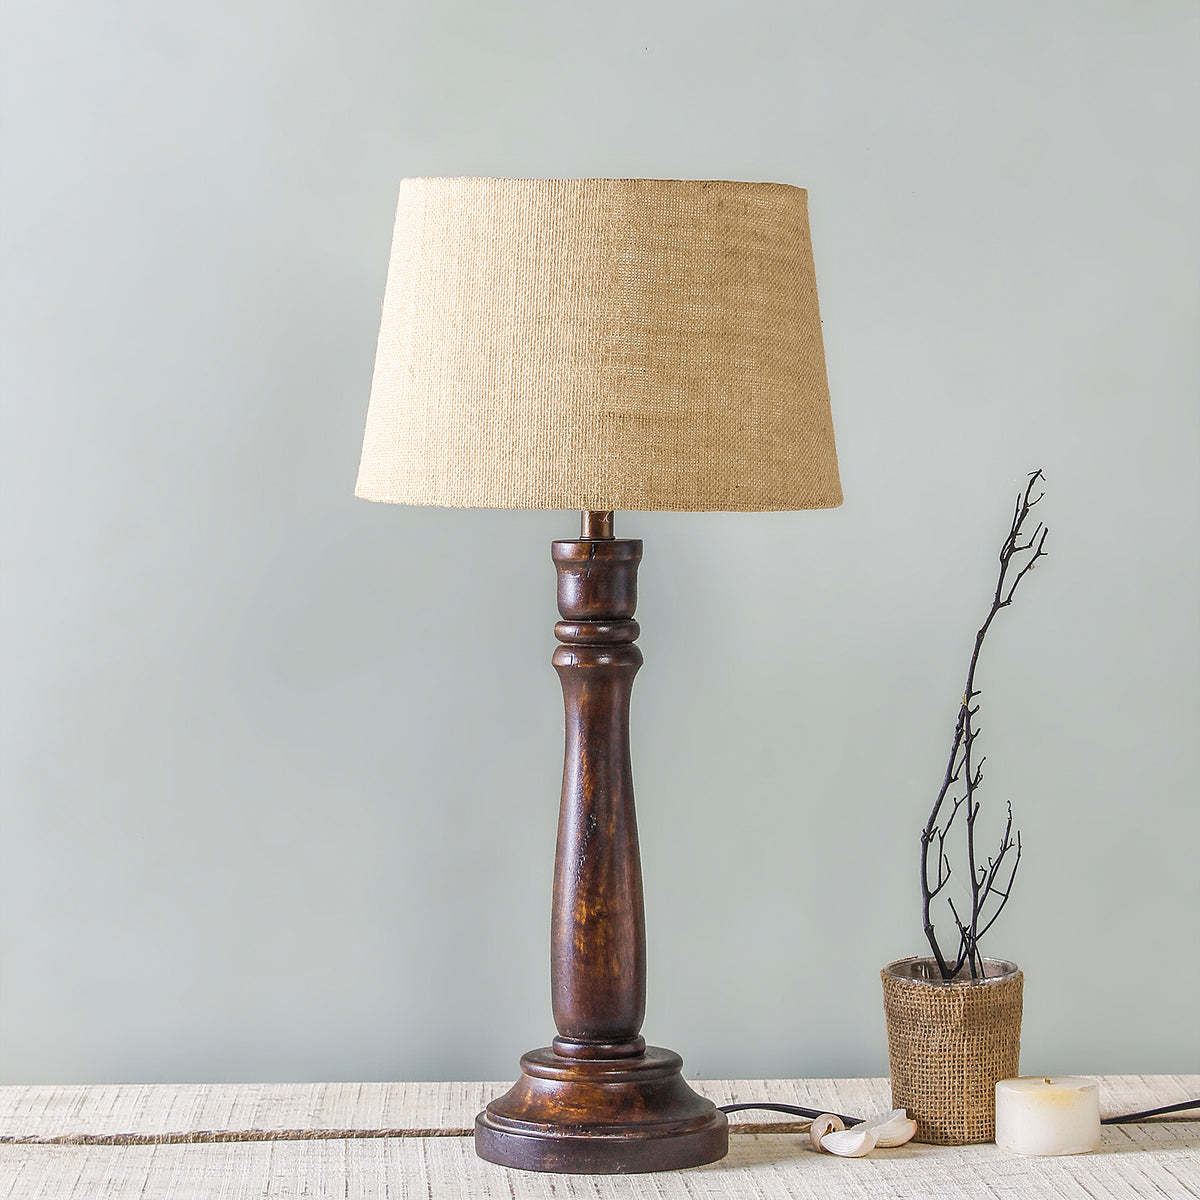 Buy Arwen Wood Table Lamps Online